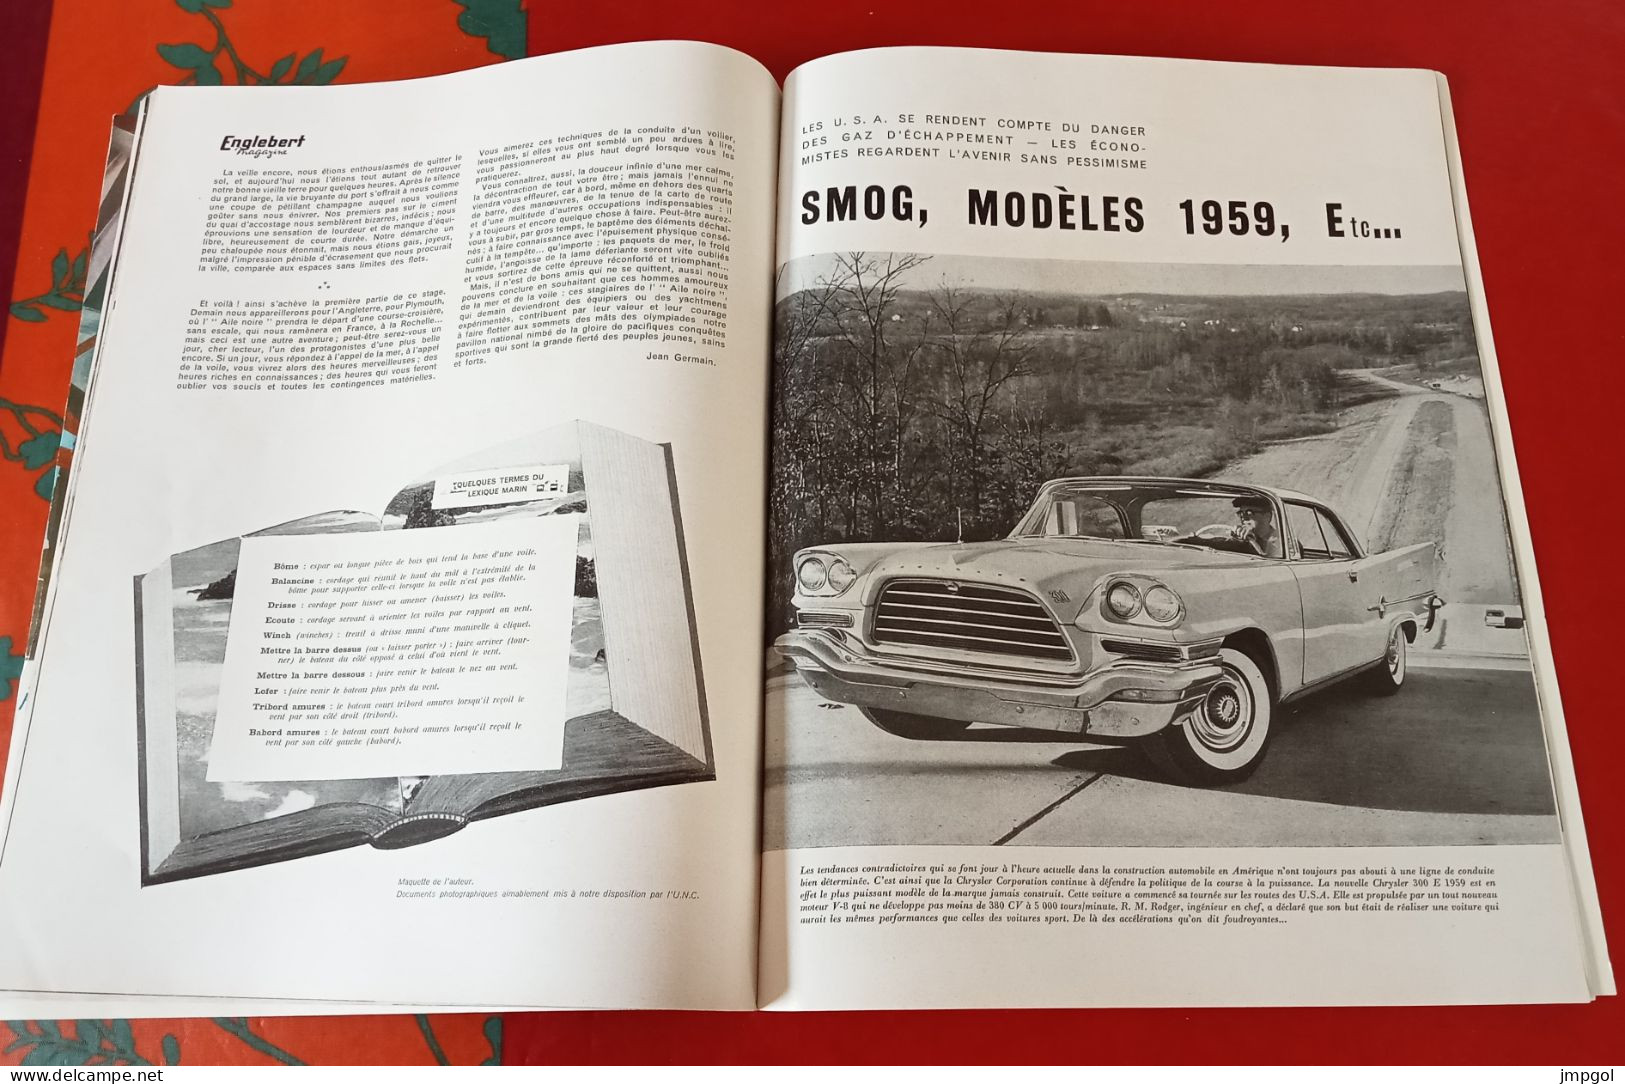 Englebert Magazine n°99 1959 Forez Bourbonnais Renault Floride Estafette Usine Gaz Lacq Pont Tancarville moteur Diesel